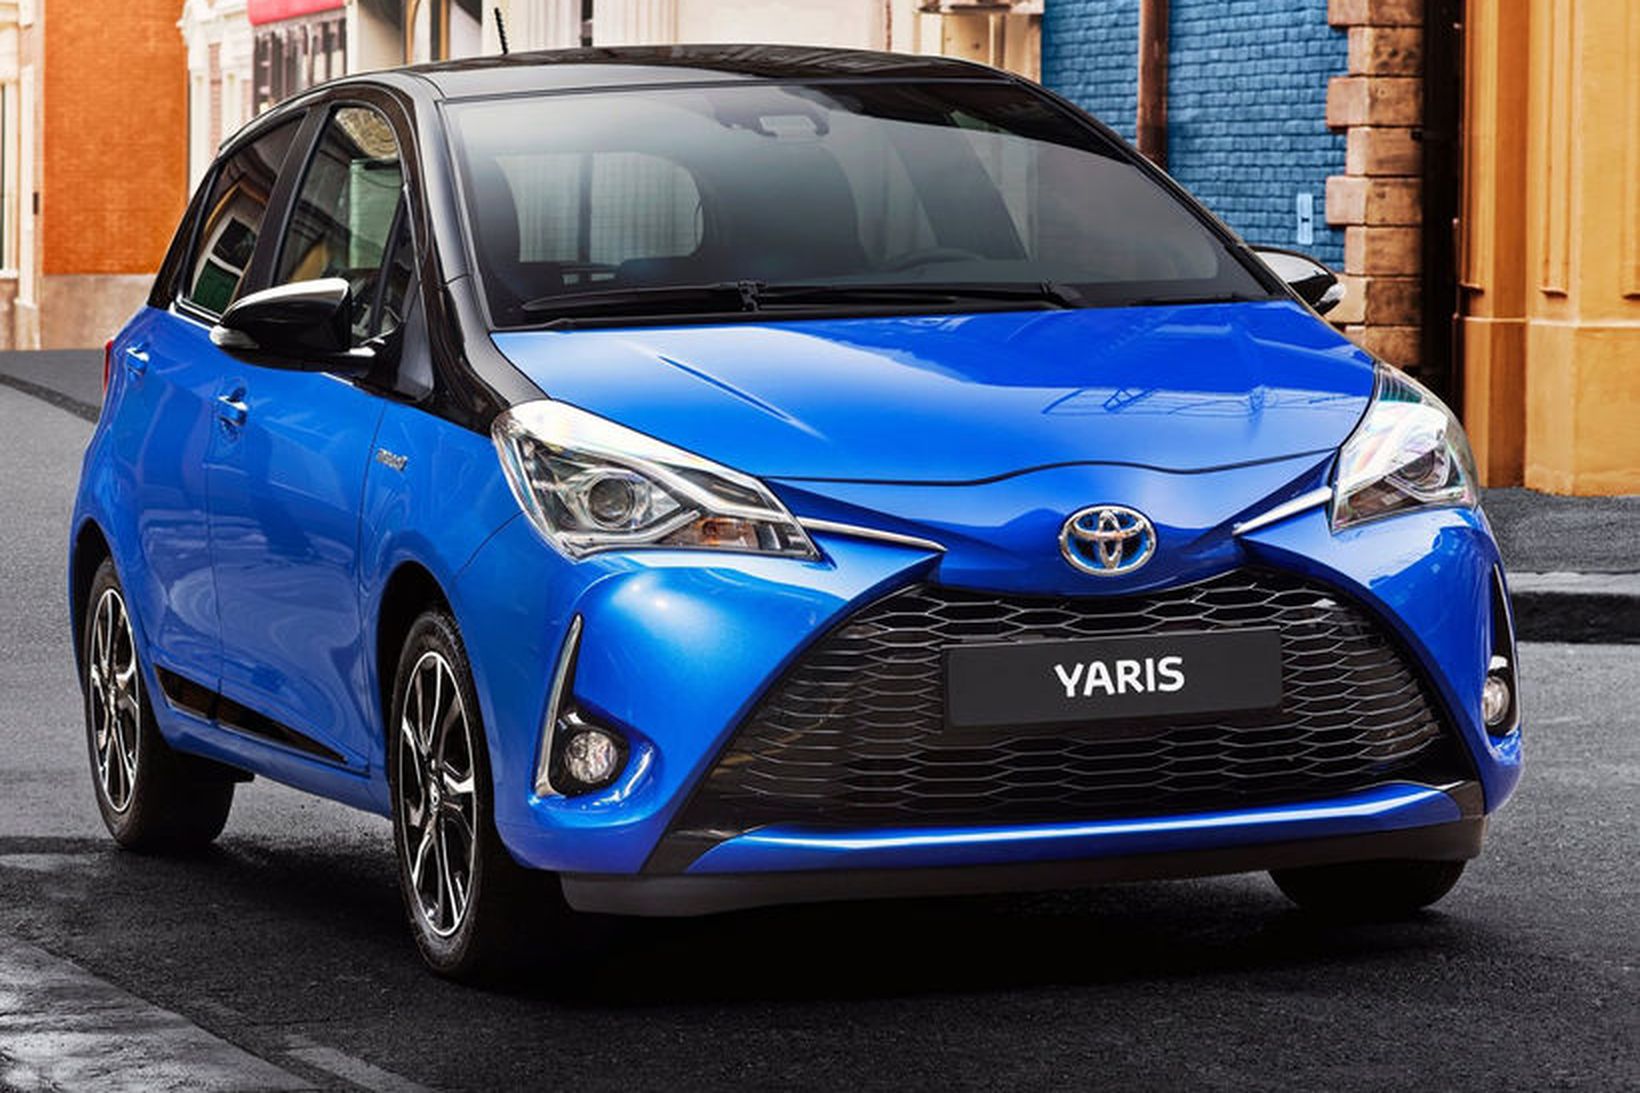 Toyota Yaris var söluhæsti útlendi bíllinn í Frakklandi 2018.